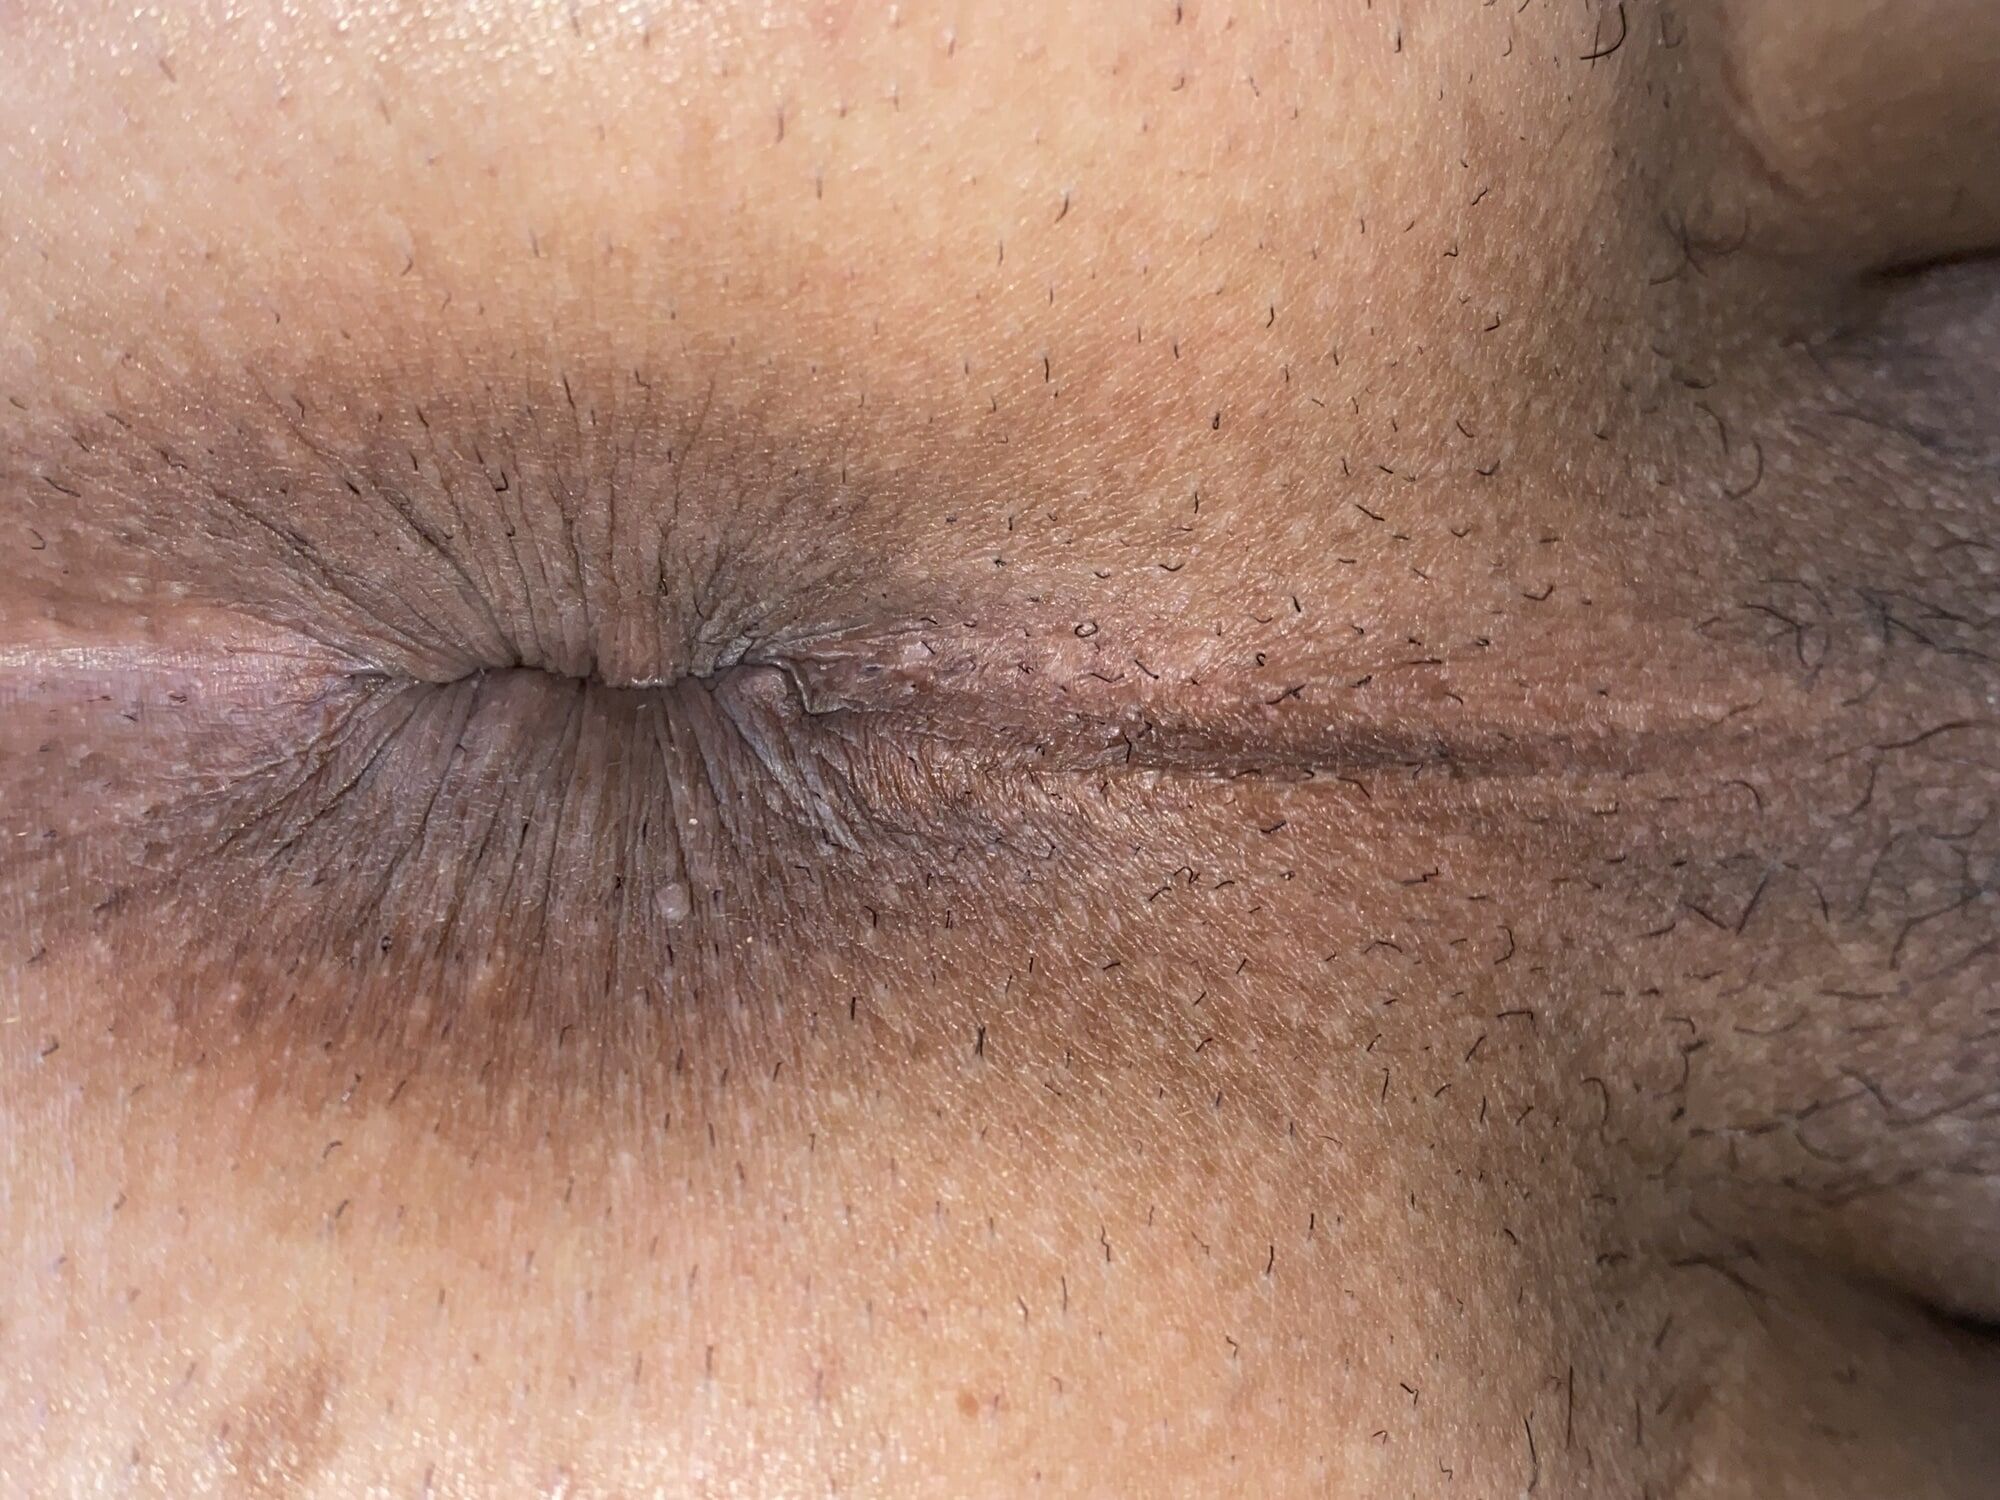 Close-up of a man's anus #45